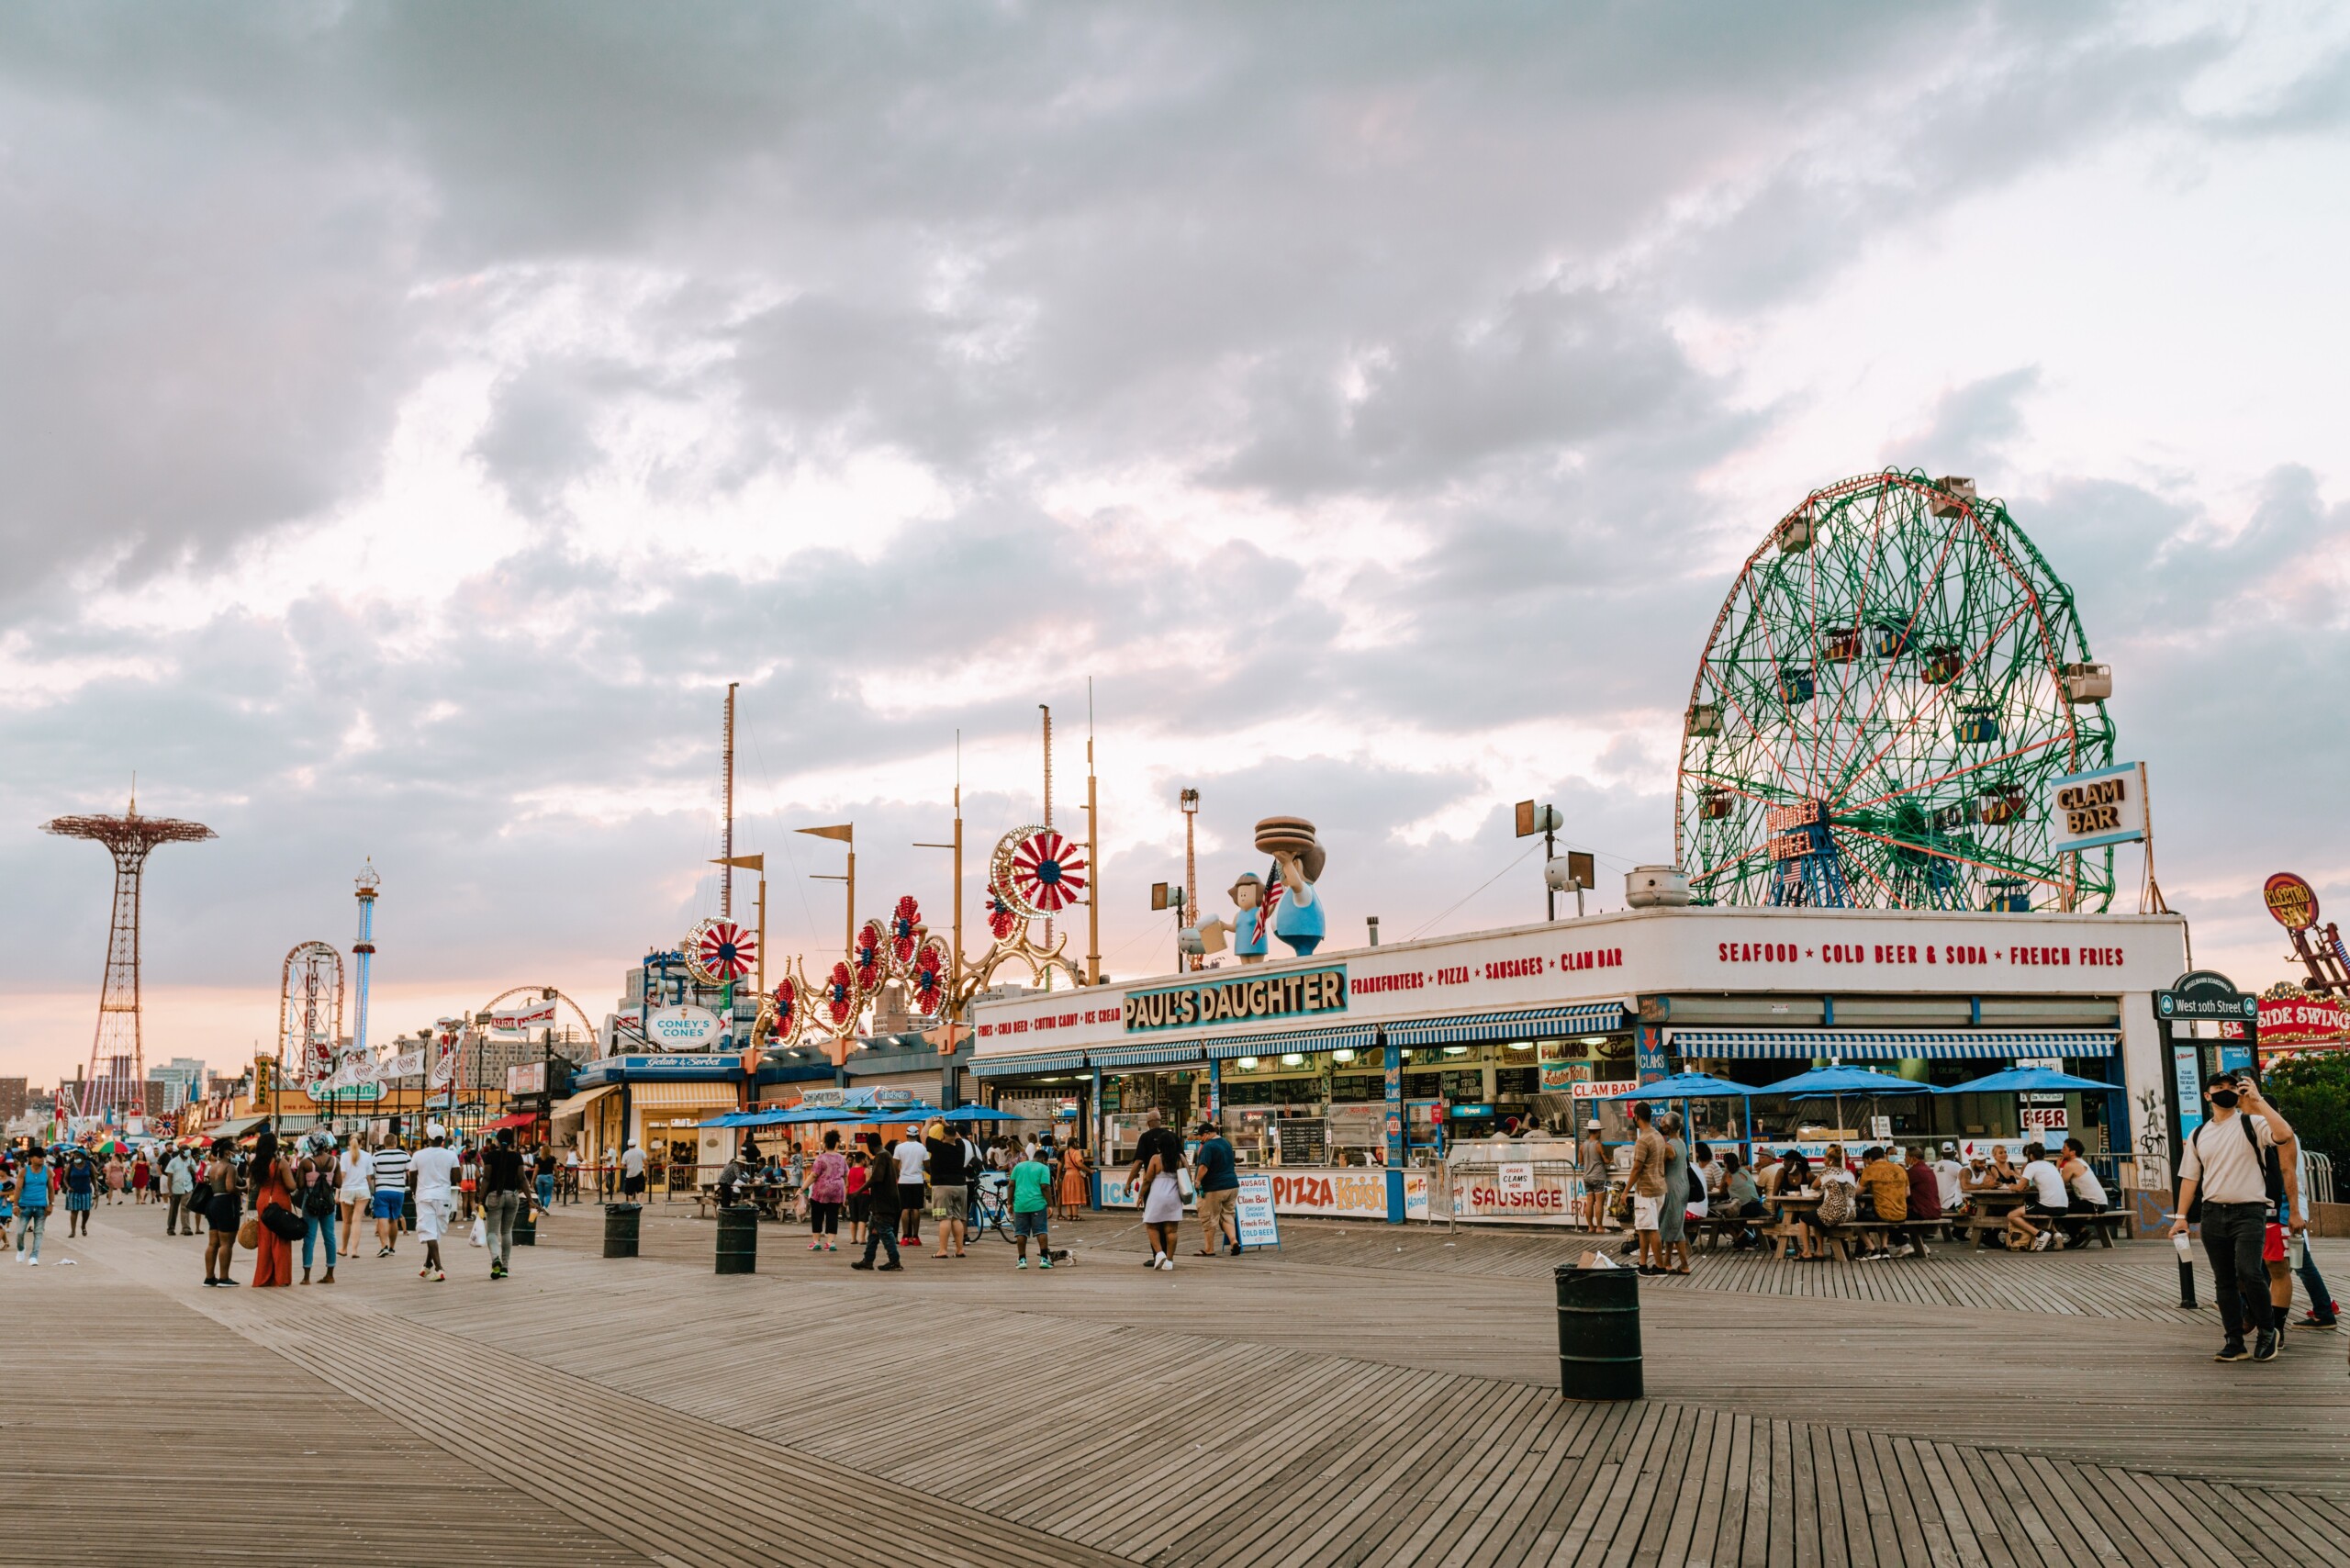 Widok z promenady Coney Island na kultowy park rozrywki Wonder Wheel.